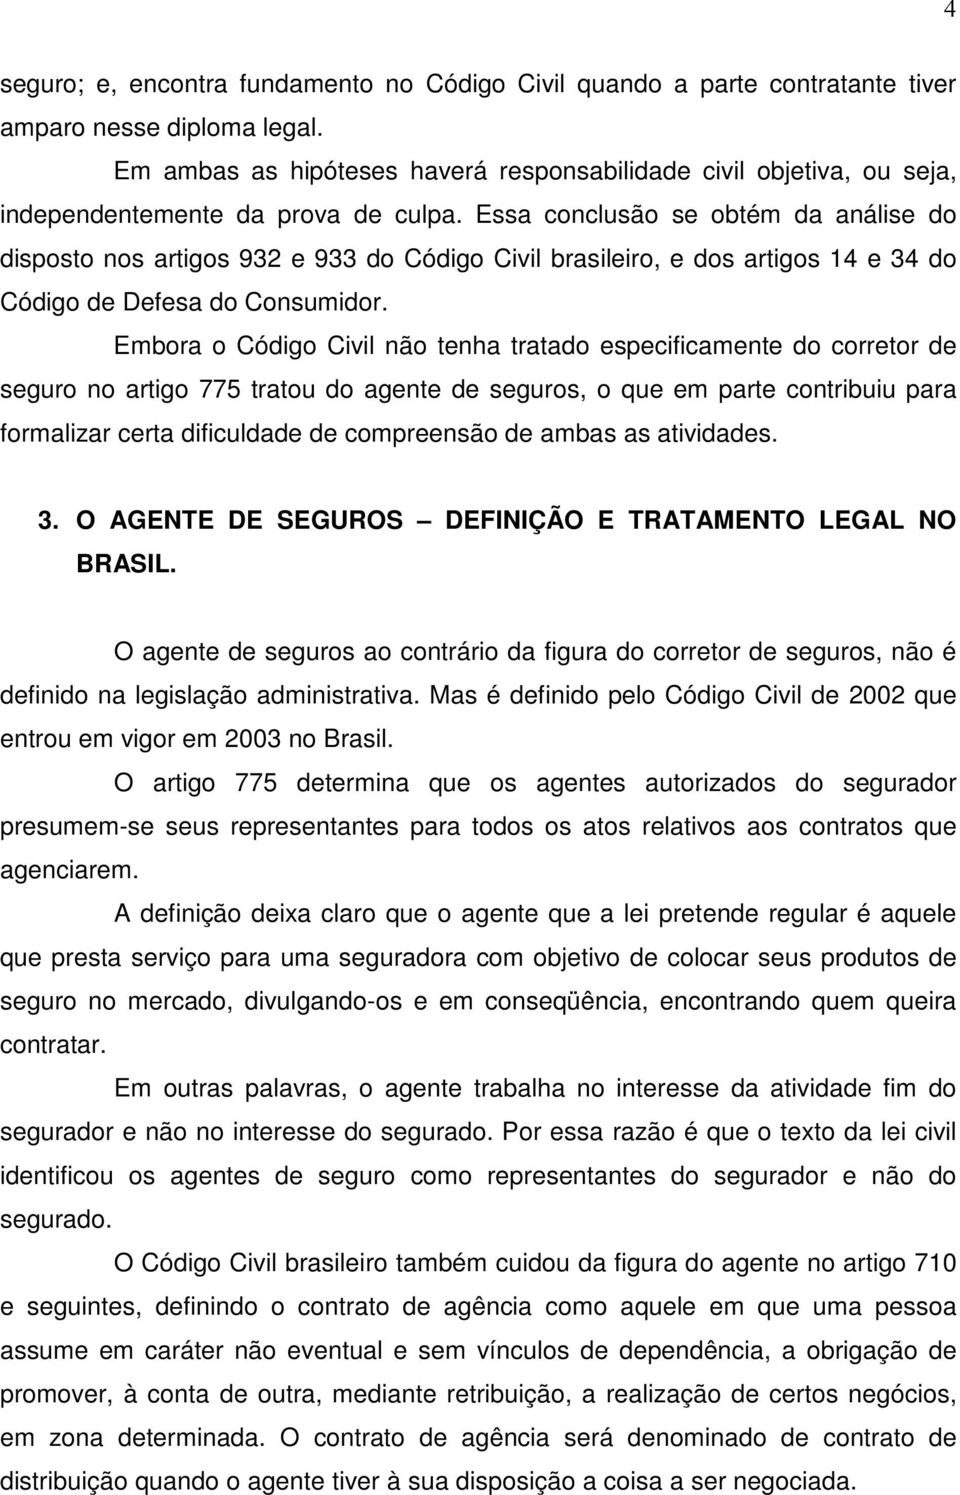 Essa conclusão se obtém da análise do disposto nos artigos 932 e 933 do Código Civil brasileiro, e dos artigos 14 e 34 do Código de Defesa do Consumidor.